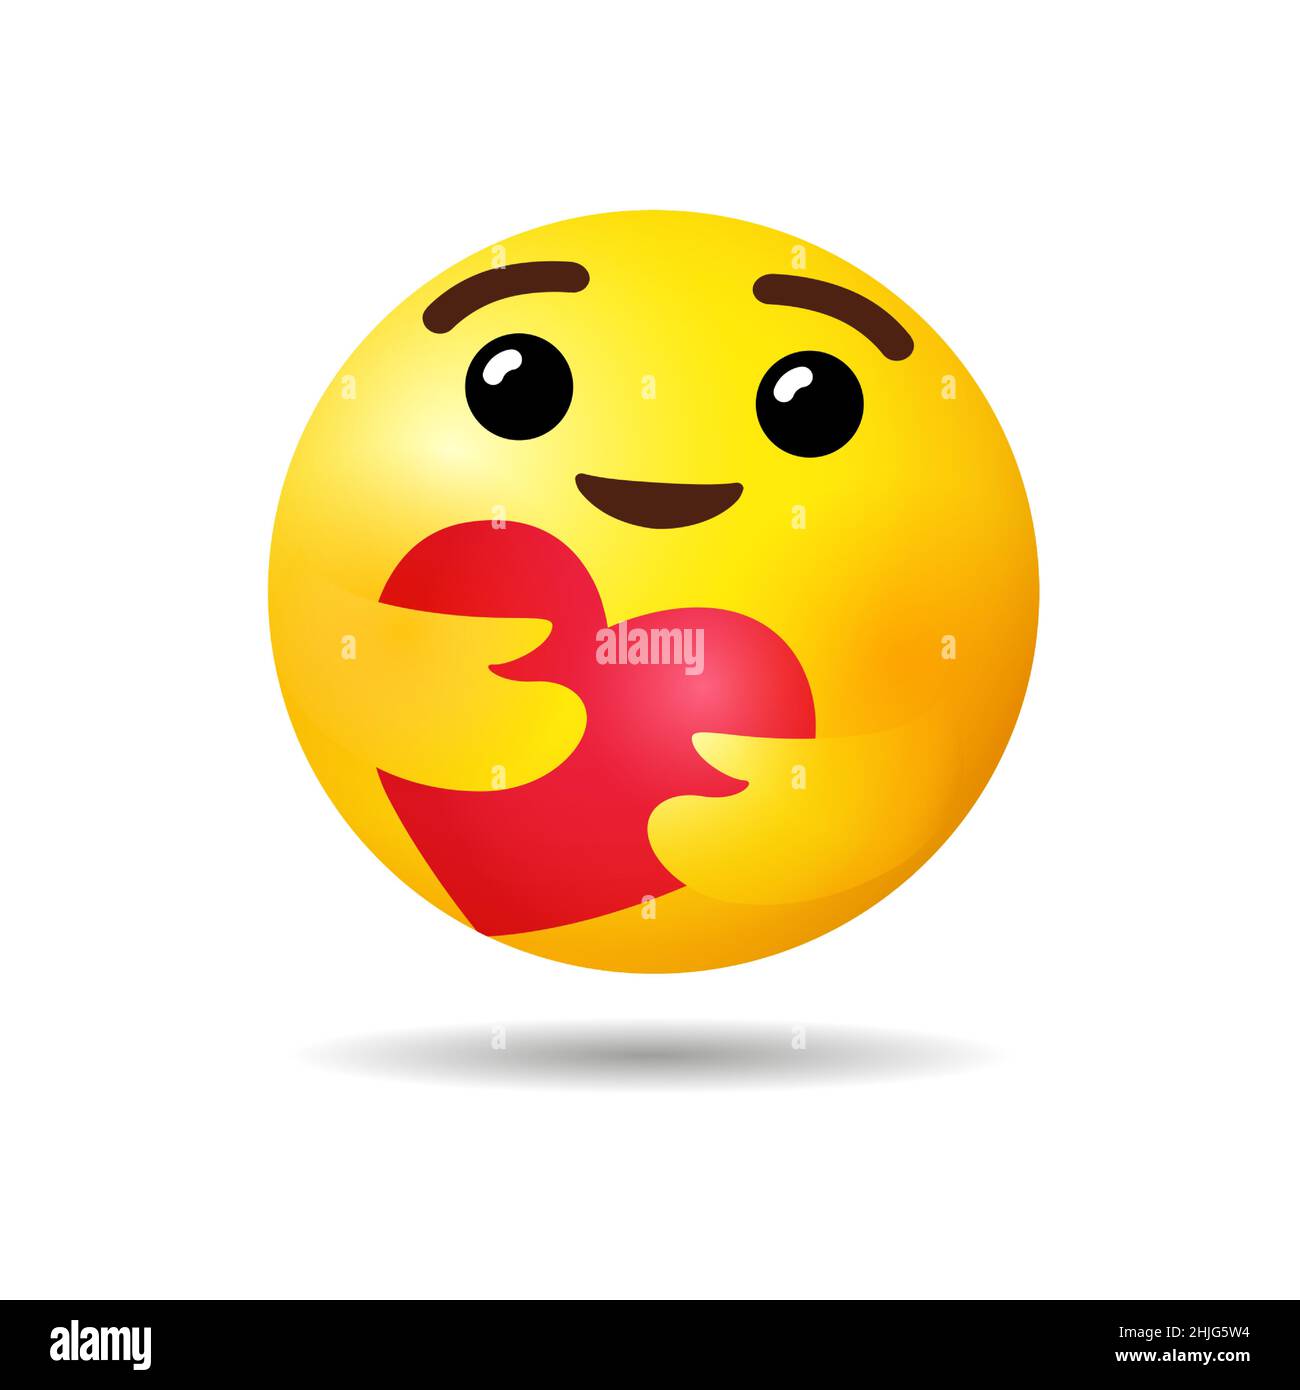 Soins emoji Banque d'images détourées - Alamy